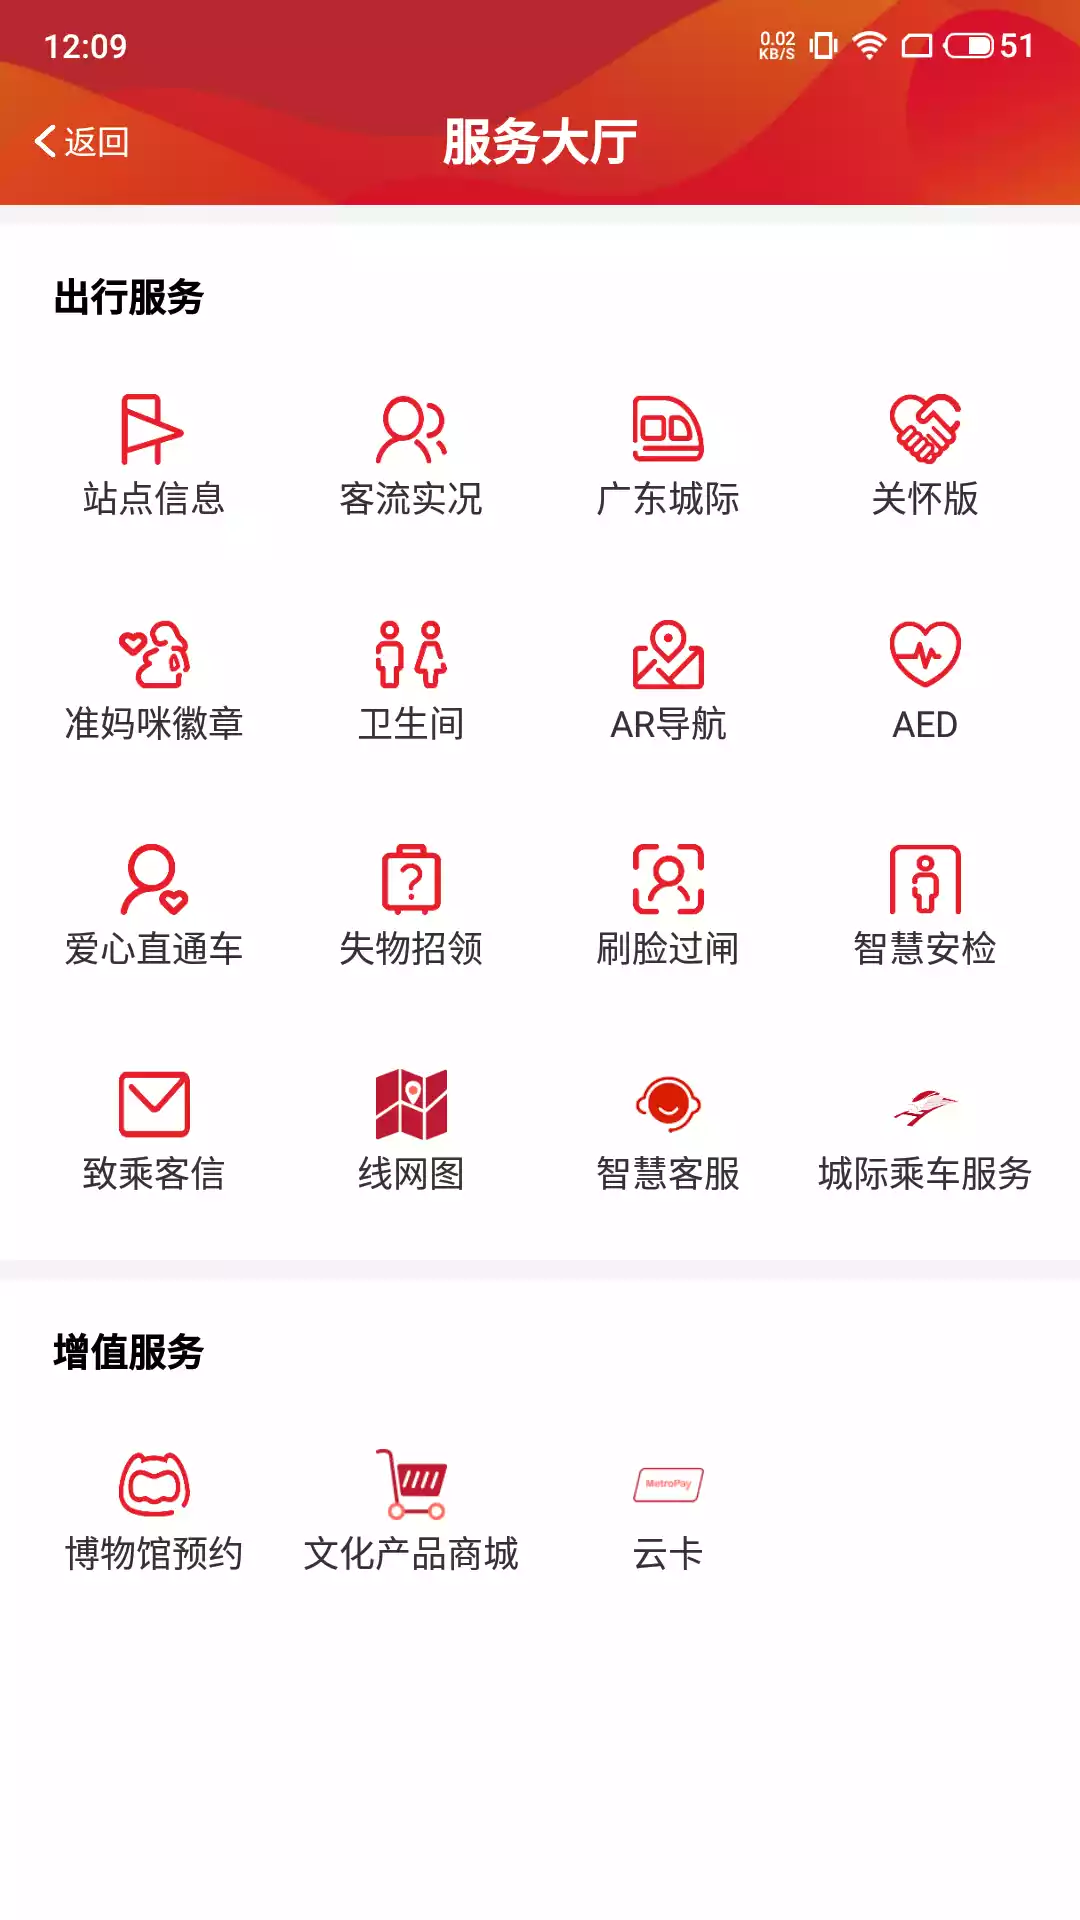 广州地铁app乘车码截图